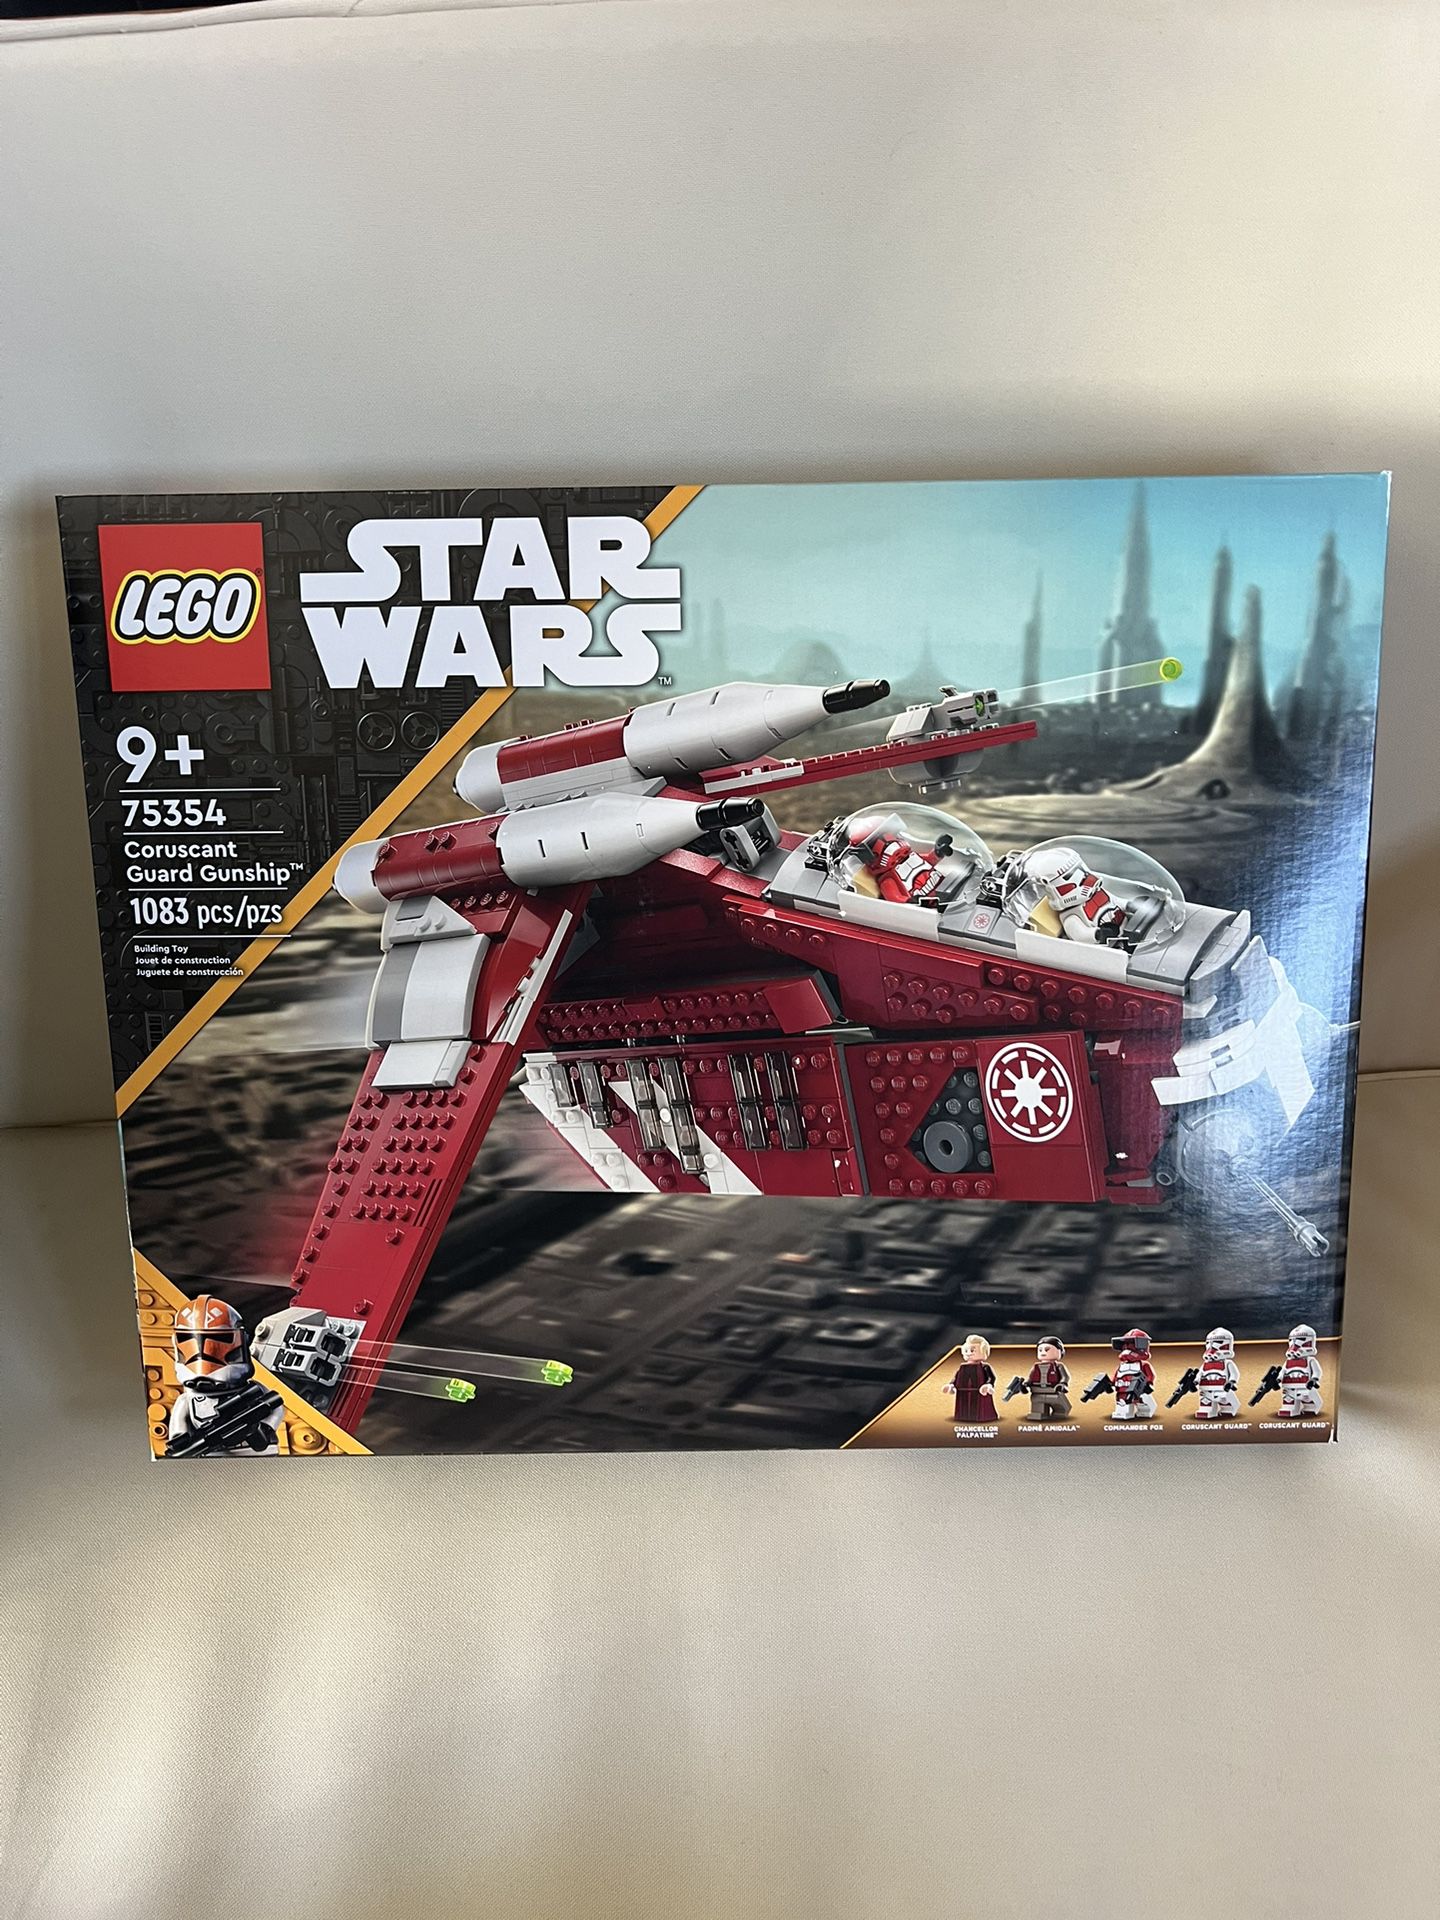 Star Wars Lego 75354 Coruscant Guard Ship